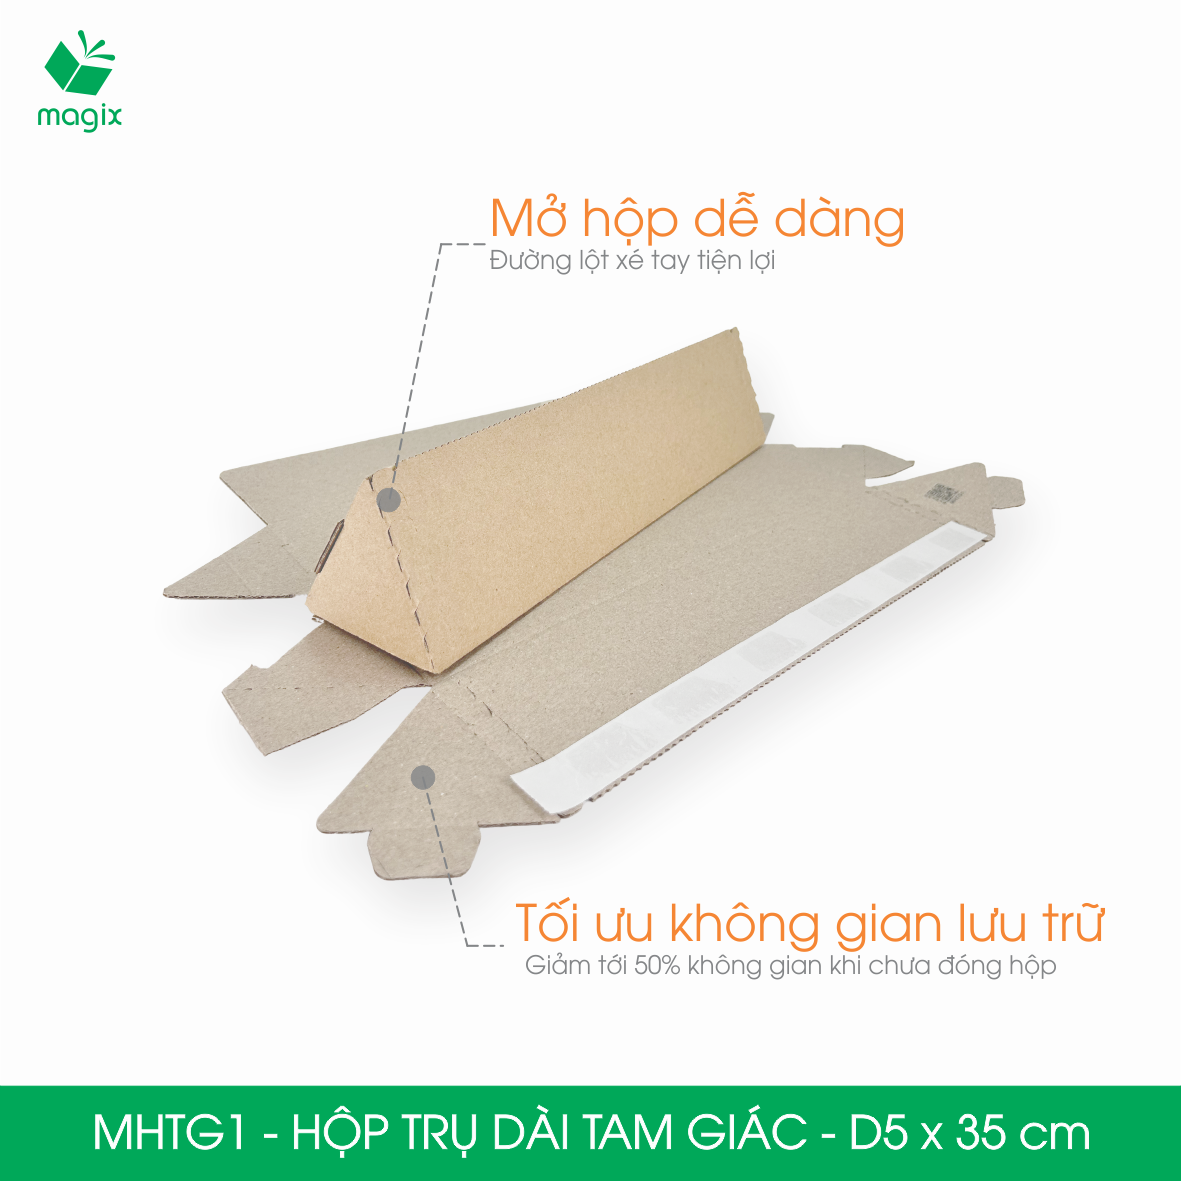 MHTG1 - D5x35 cm - 10 Hộp trụ dài tam giác thay thế ống giấy - Hộp carton đóng gói hàng